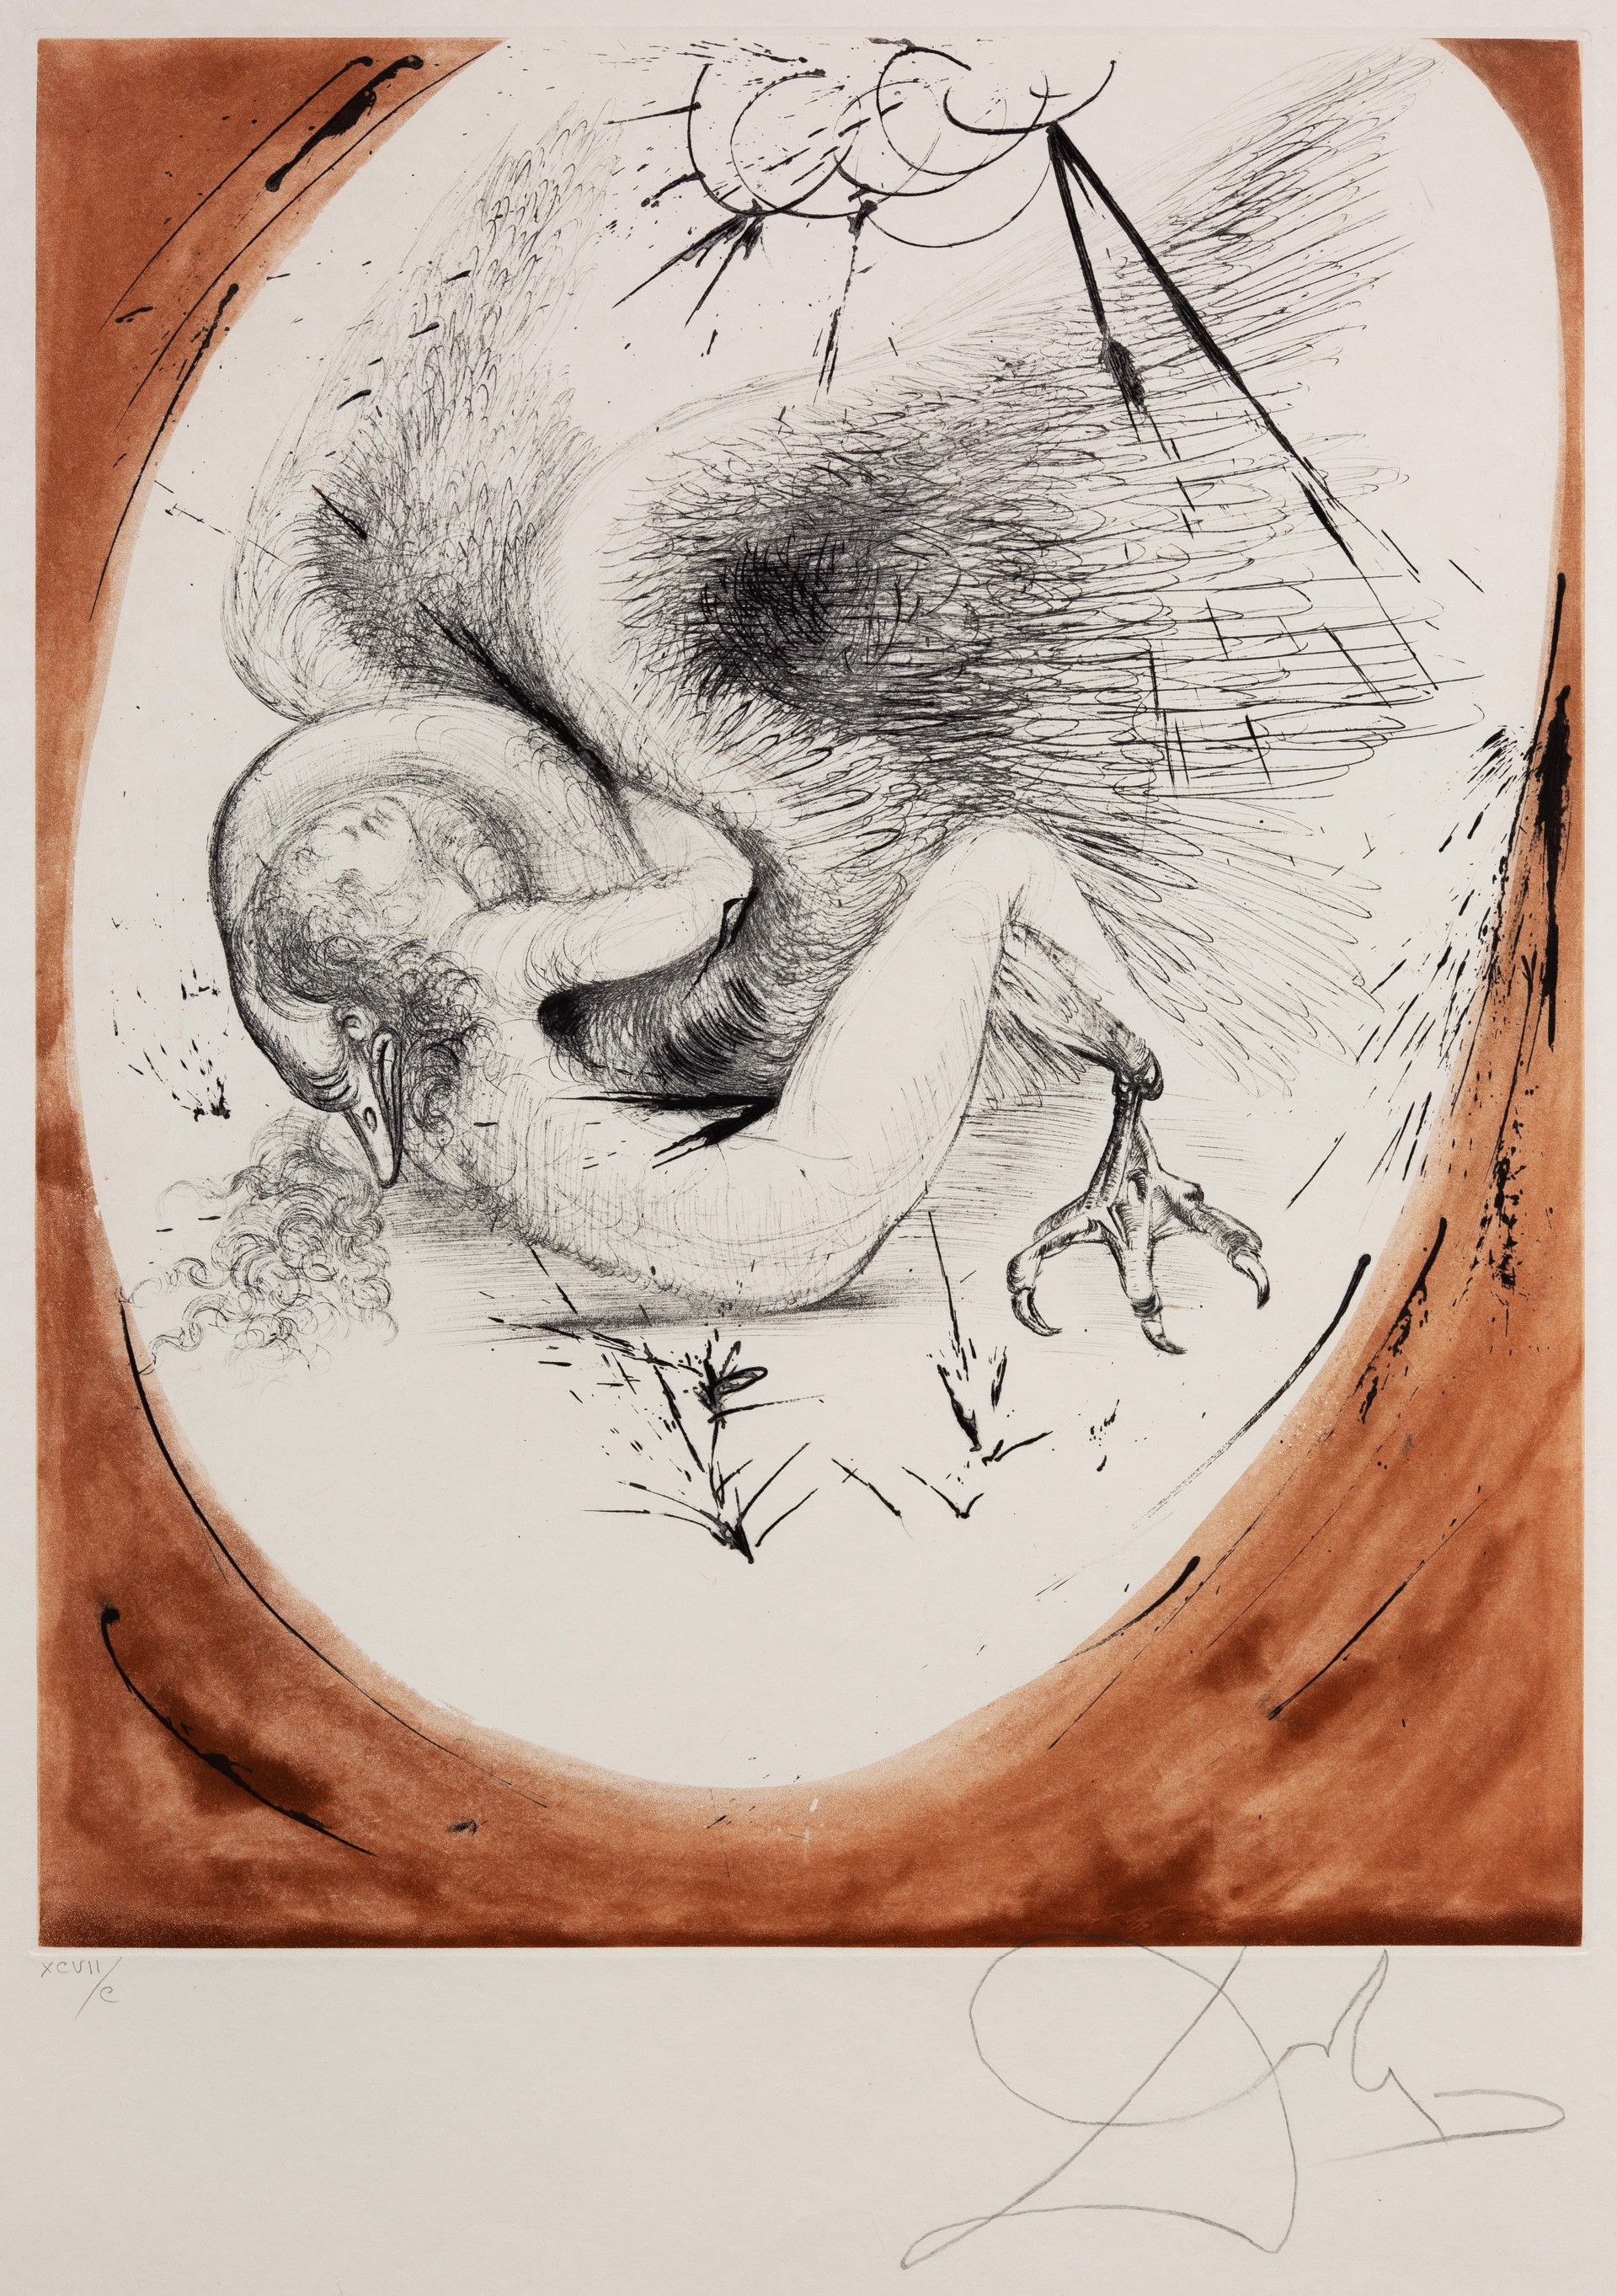 Mythology “Leda and the Swan XCVII/C” by Salvador Dalí